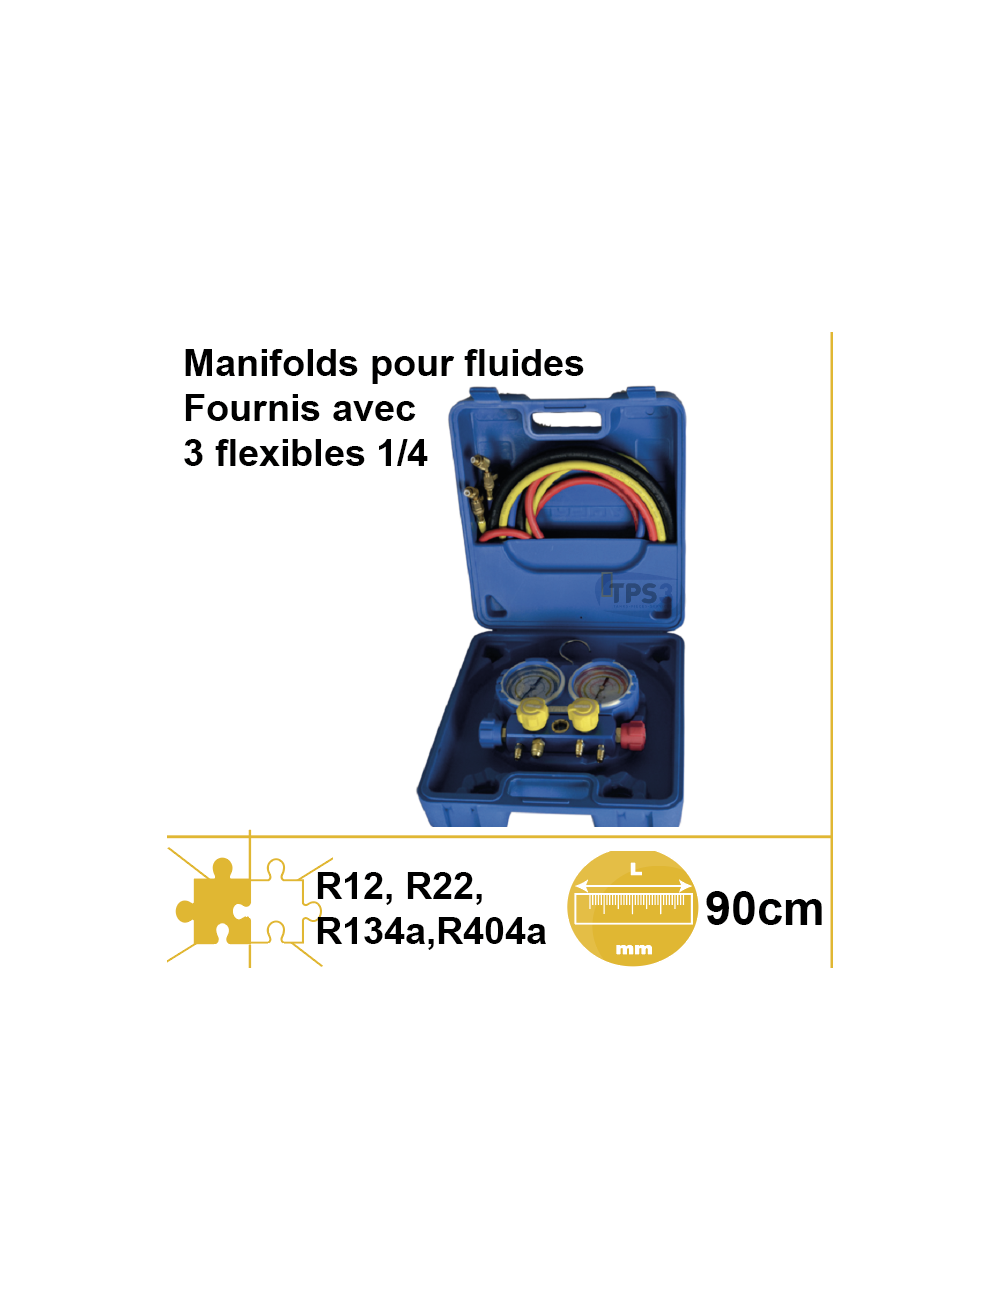 Manifold en malette avec flexibles pour R22,R134a,R404a, R407f